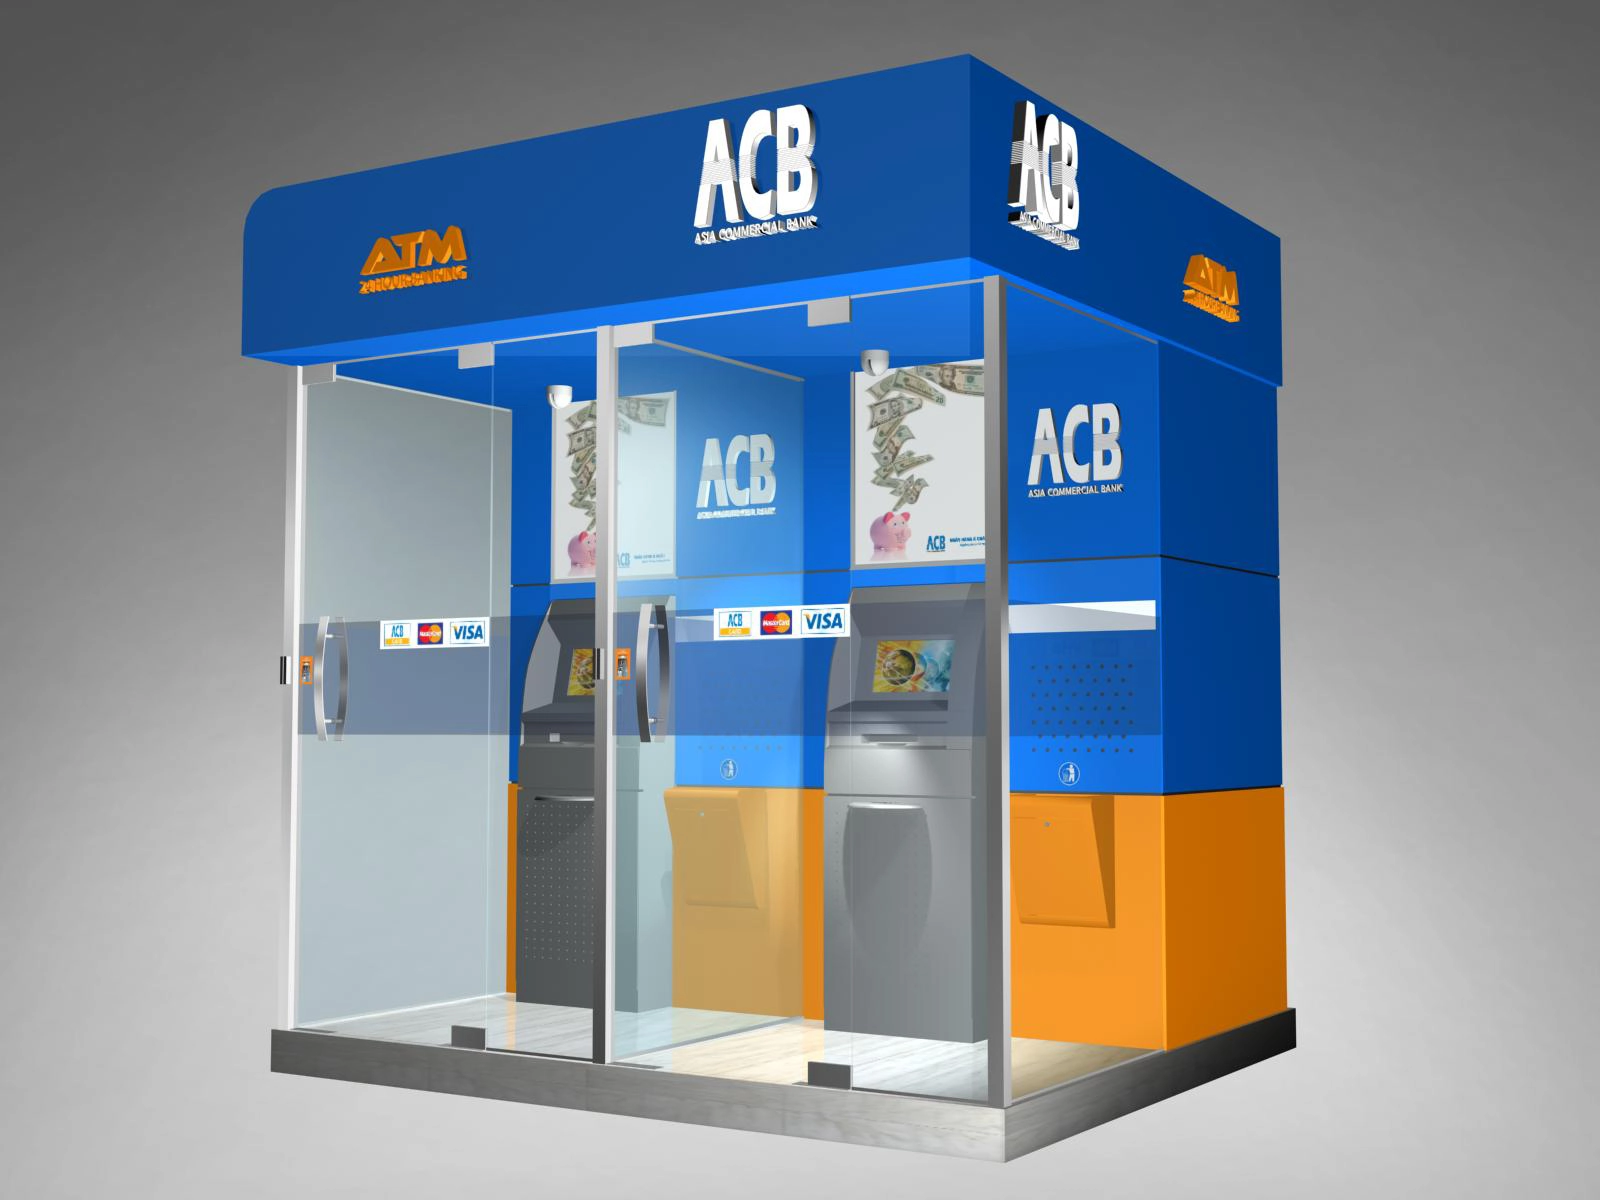 ATM Ngân hàng Á Châu (ACB) - PGD TRẦN HƯNG ĐẠO